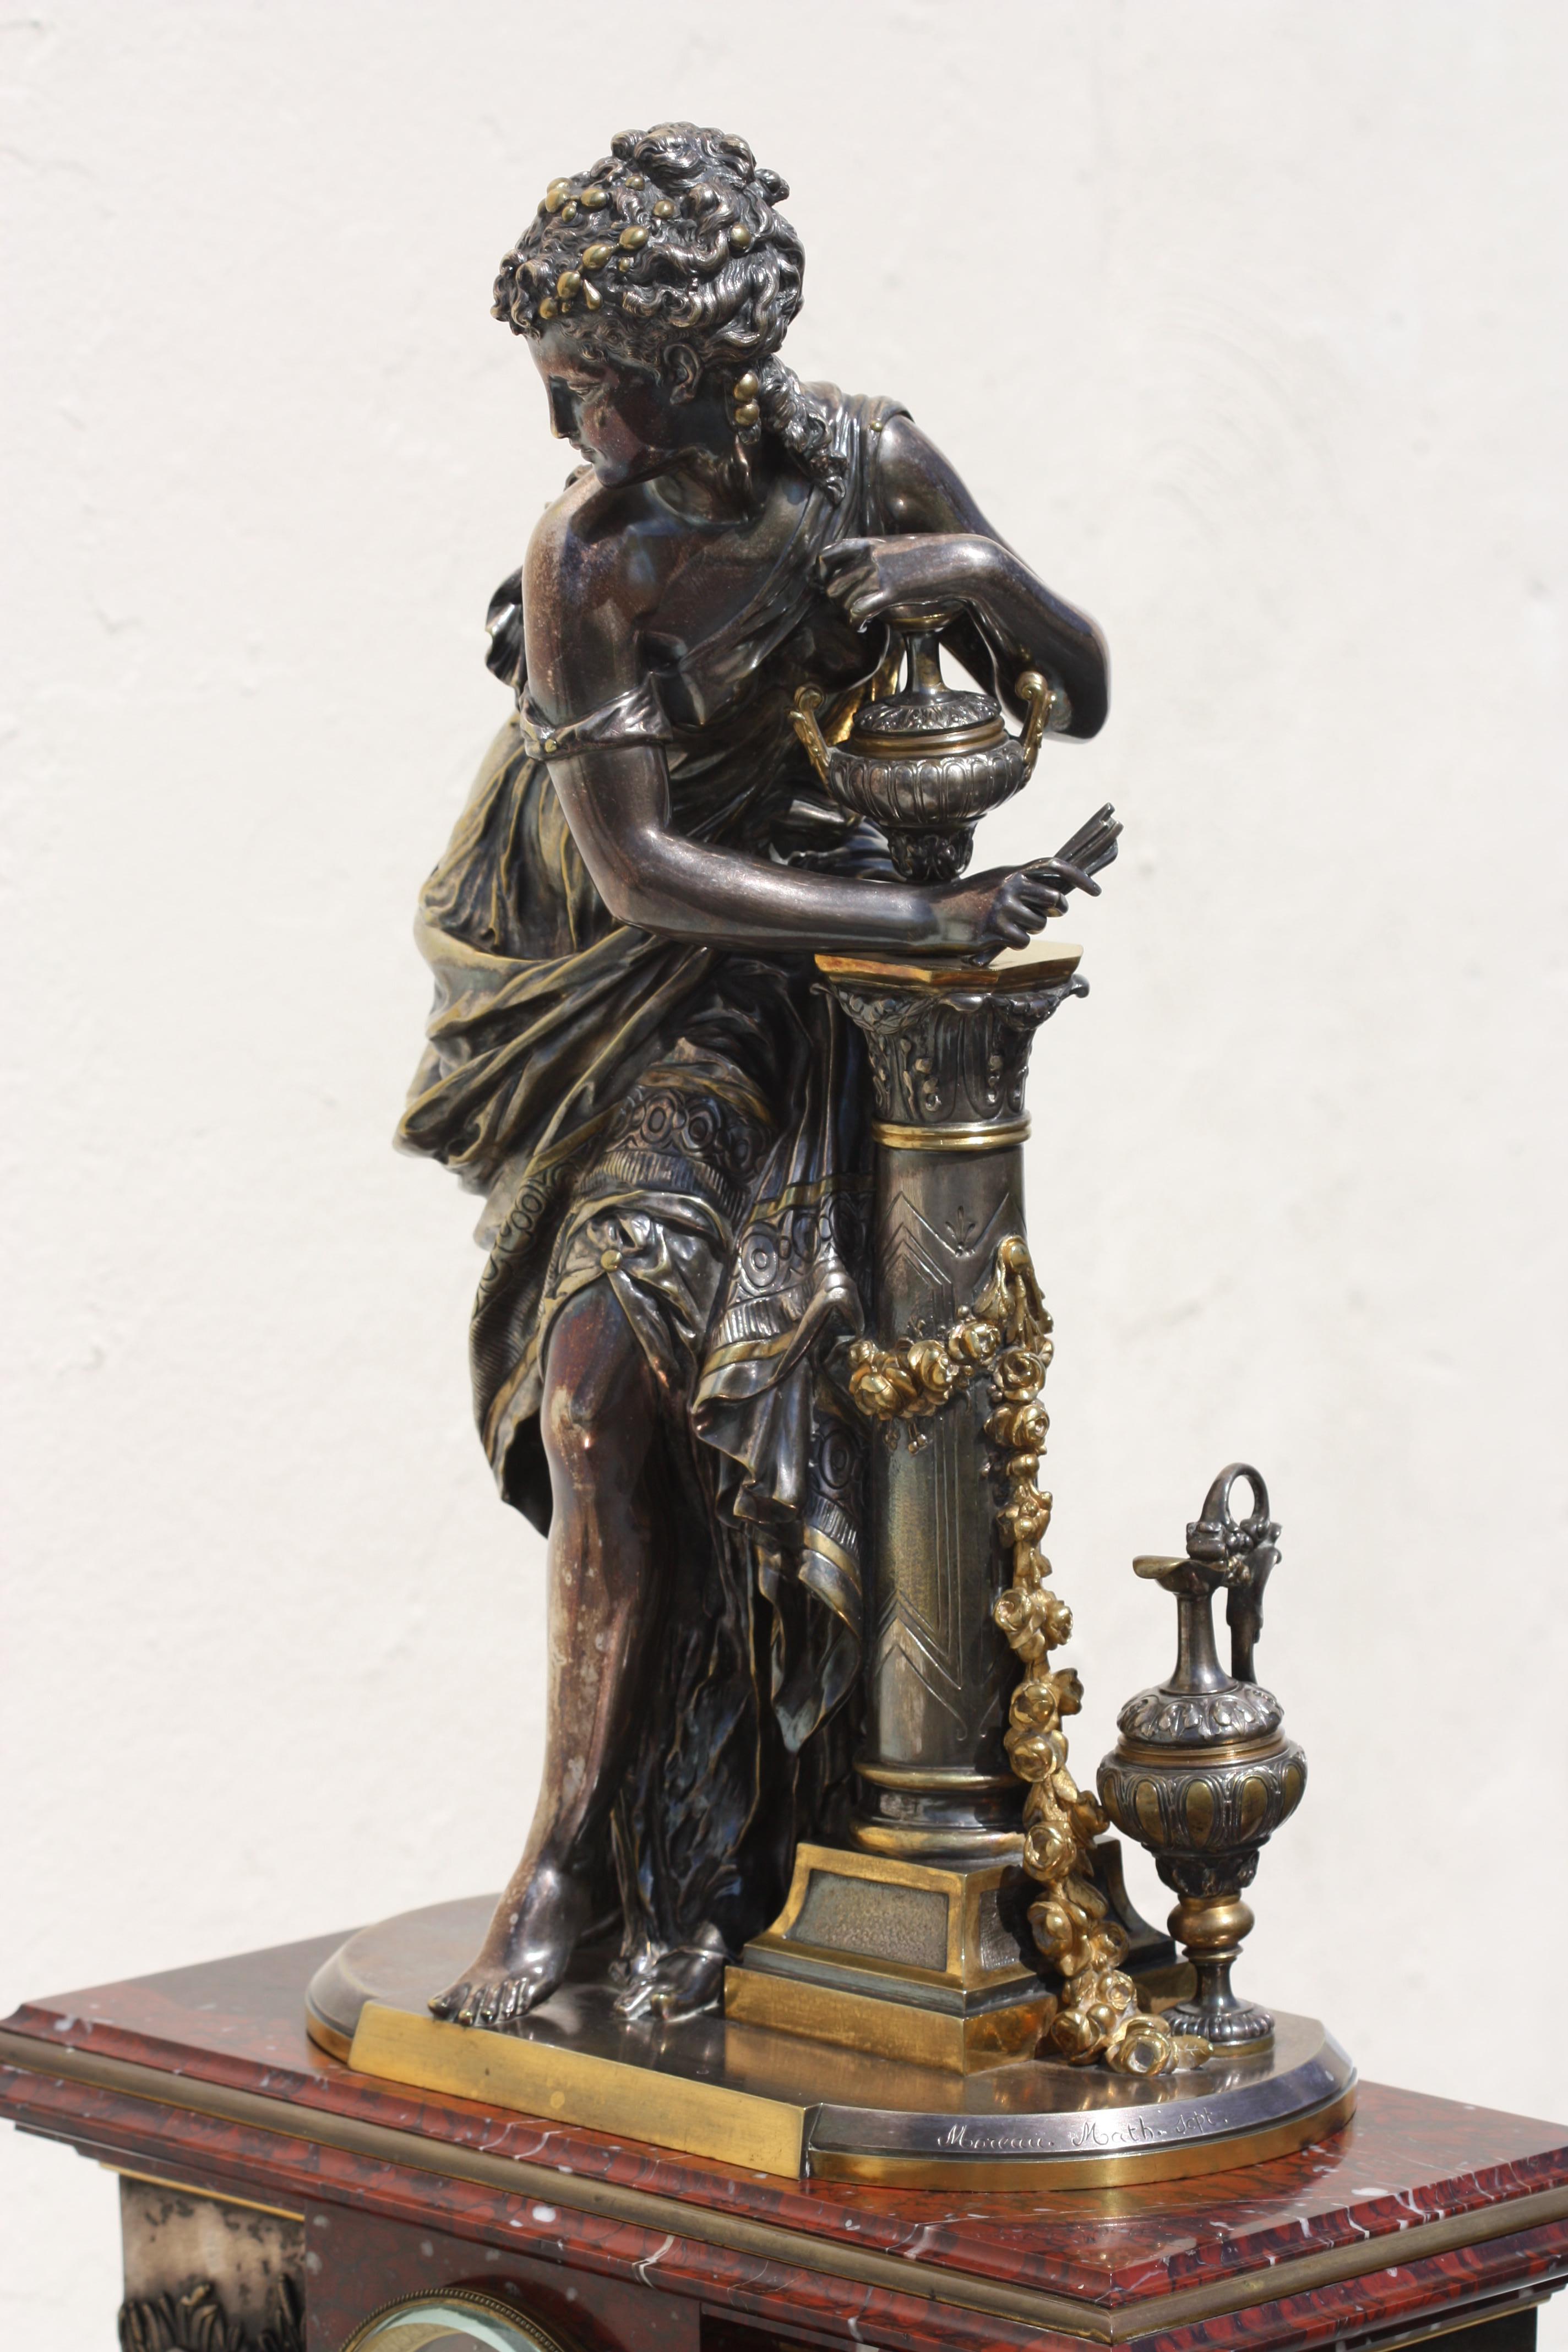 Grande garniture de pendule Napoléon III en marbre Rouge griotte, argenté et bronze doré
Paris, vers 1880
moulage d'après un modèle de Mathurin Moreau (1822-1912)
Comprenant une horloge et une paire de candélabres à six lumières
signé ;
Moreau